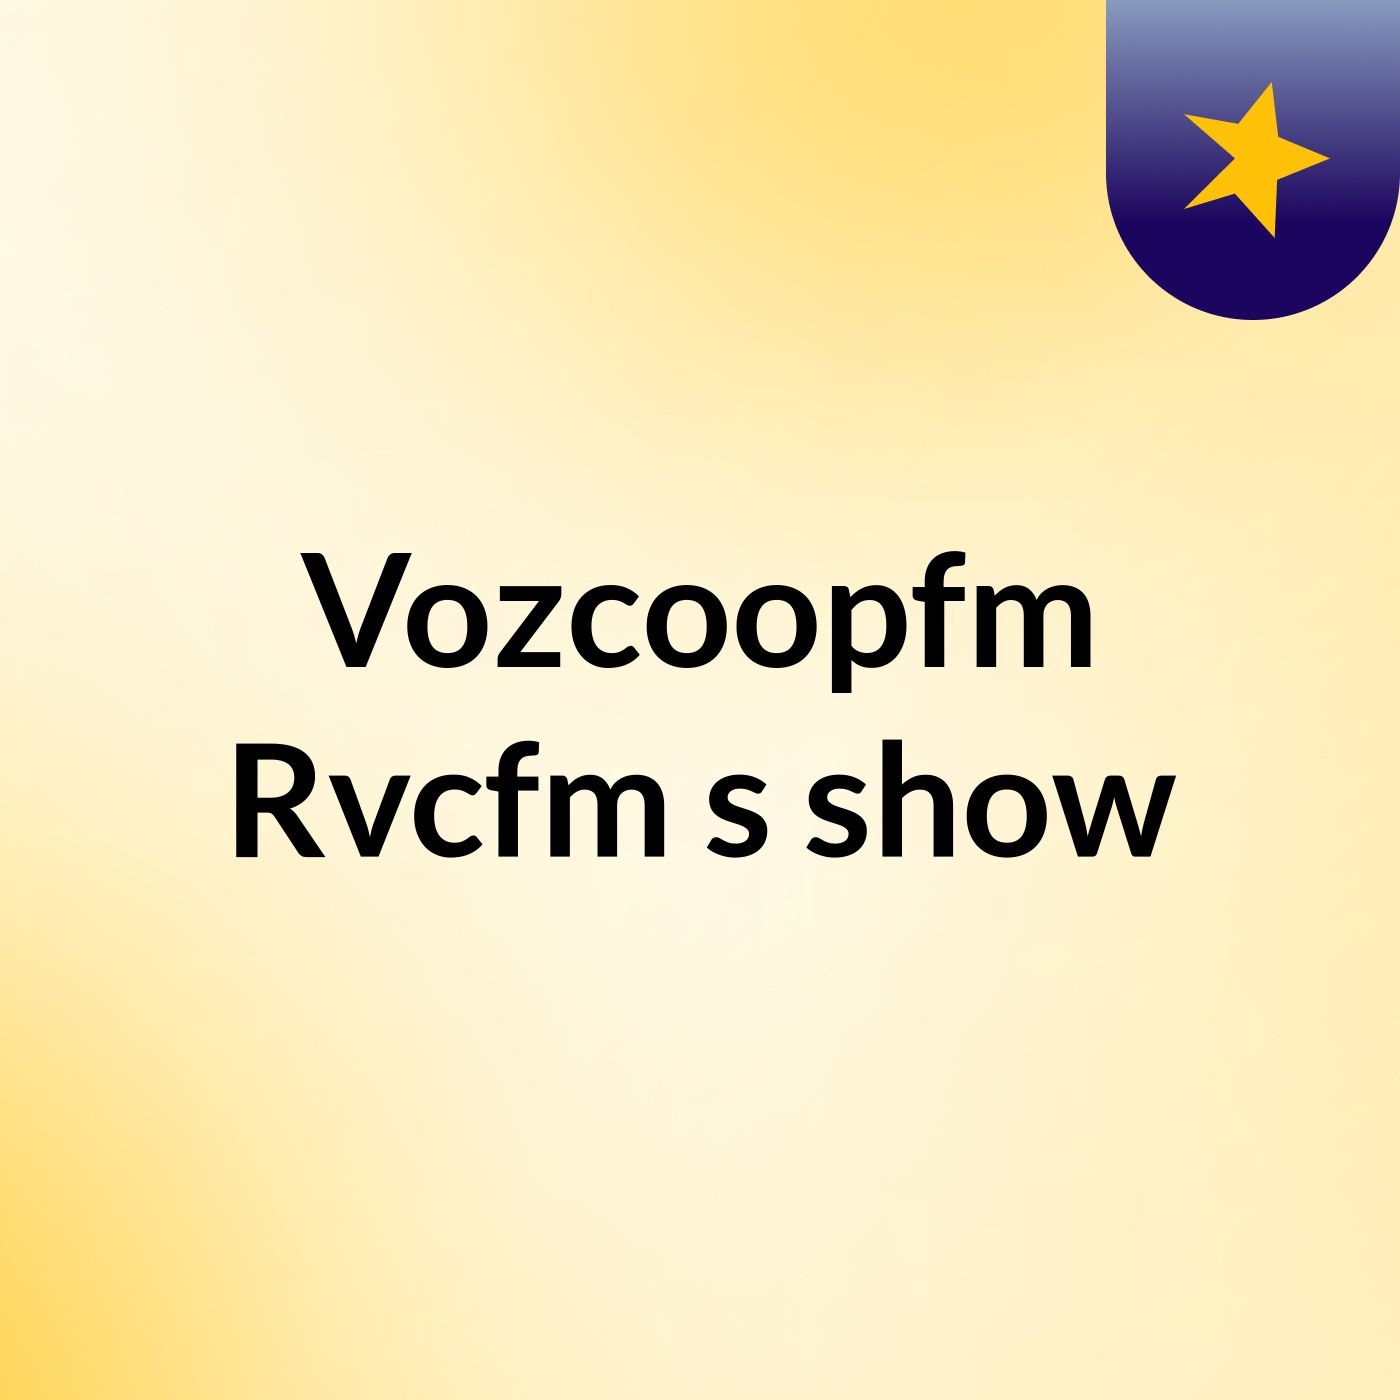 Vozcoopfm Rvcfm's show